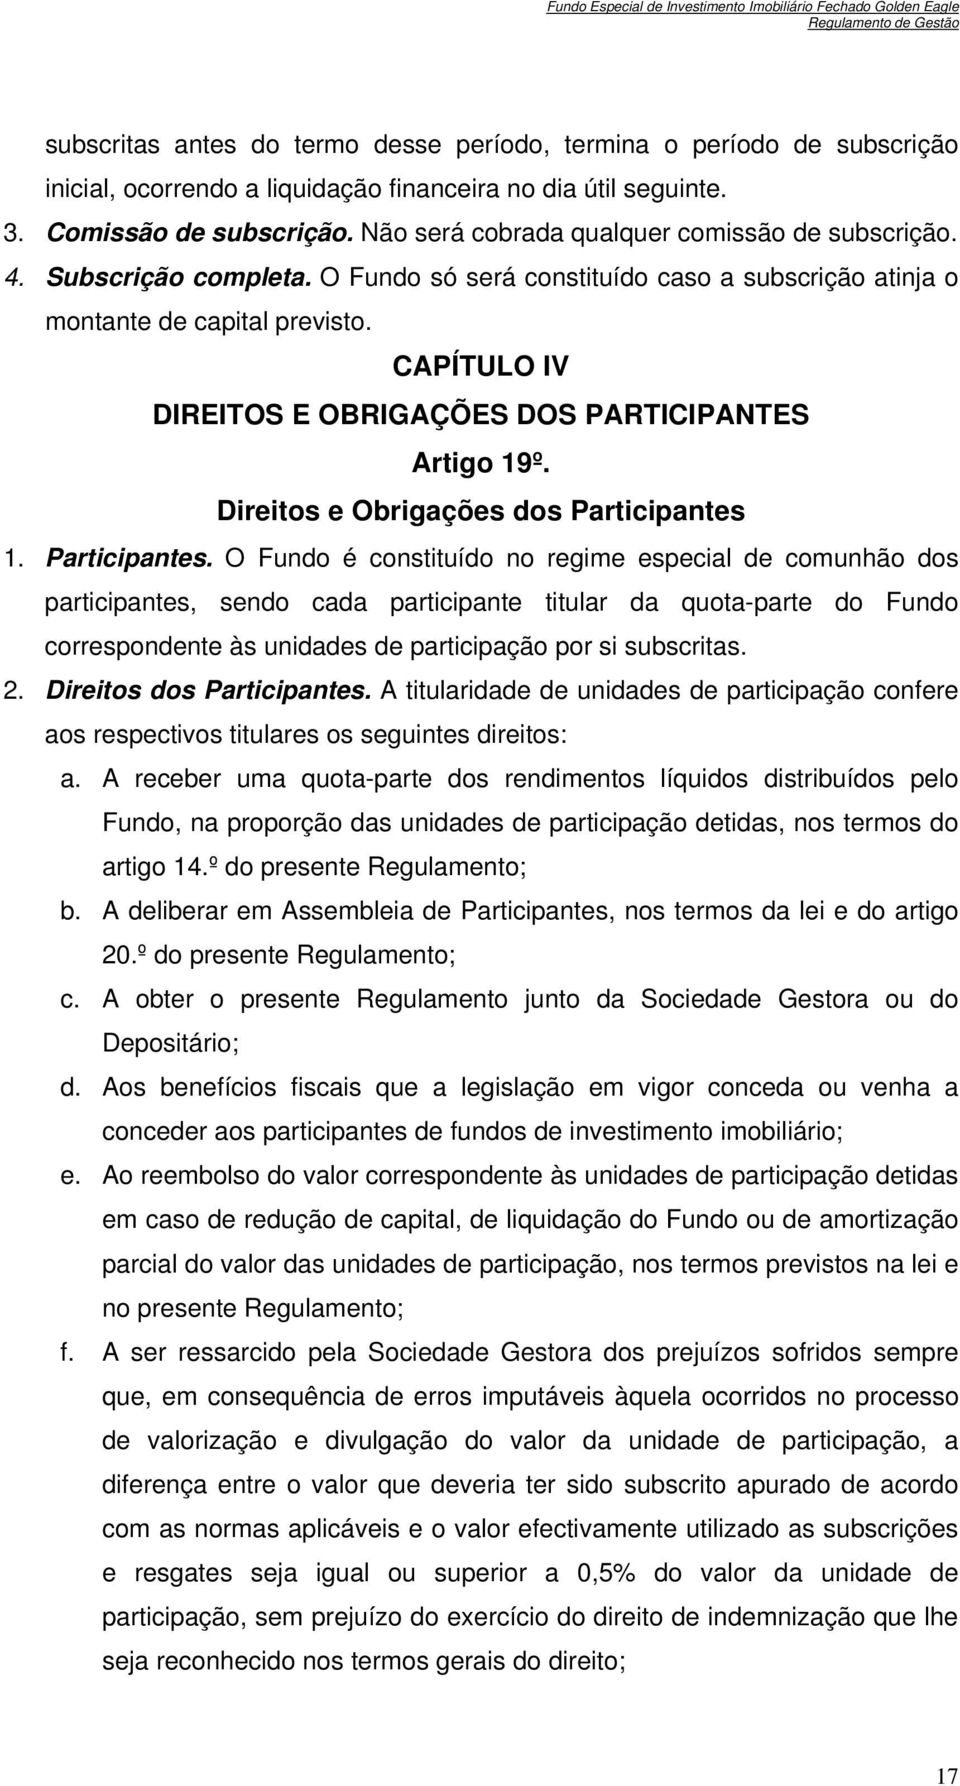 CAPÍTULO IV DIREITOS E OBRIGAÇÕES DOS PARTICIPANTES Artigo 19º. Direitos e Obrigações dos Participantes 